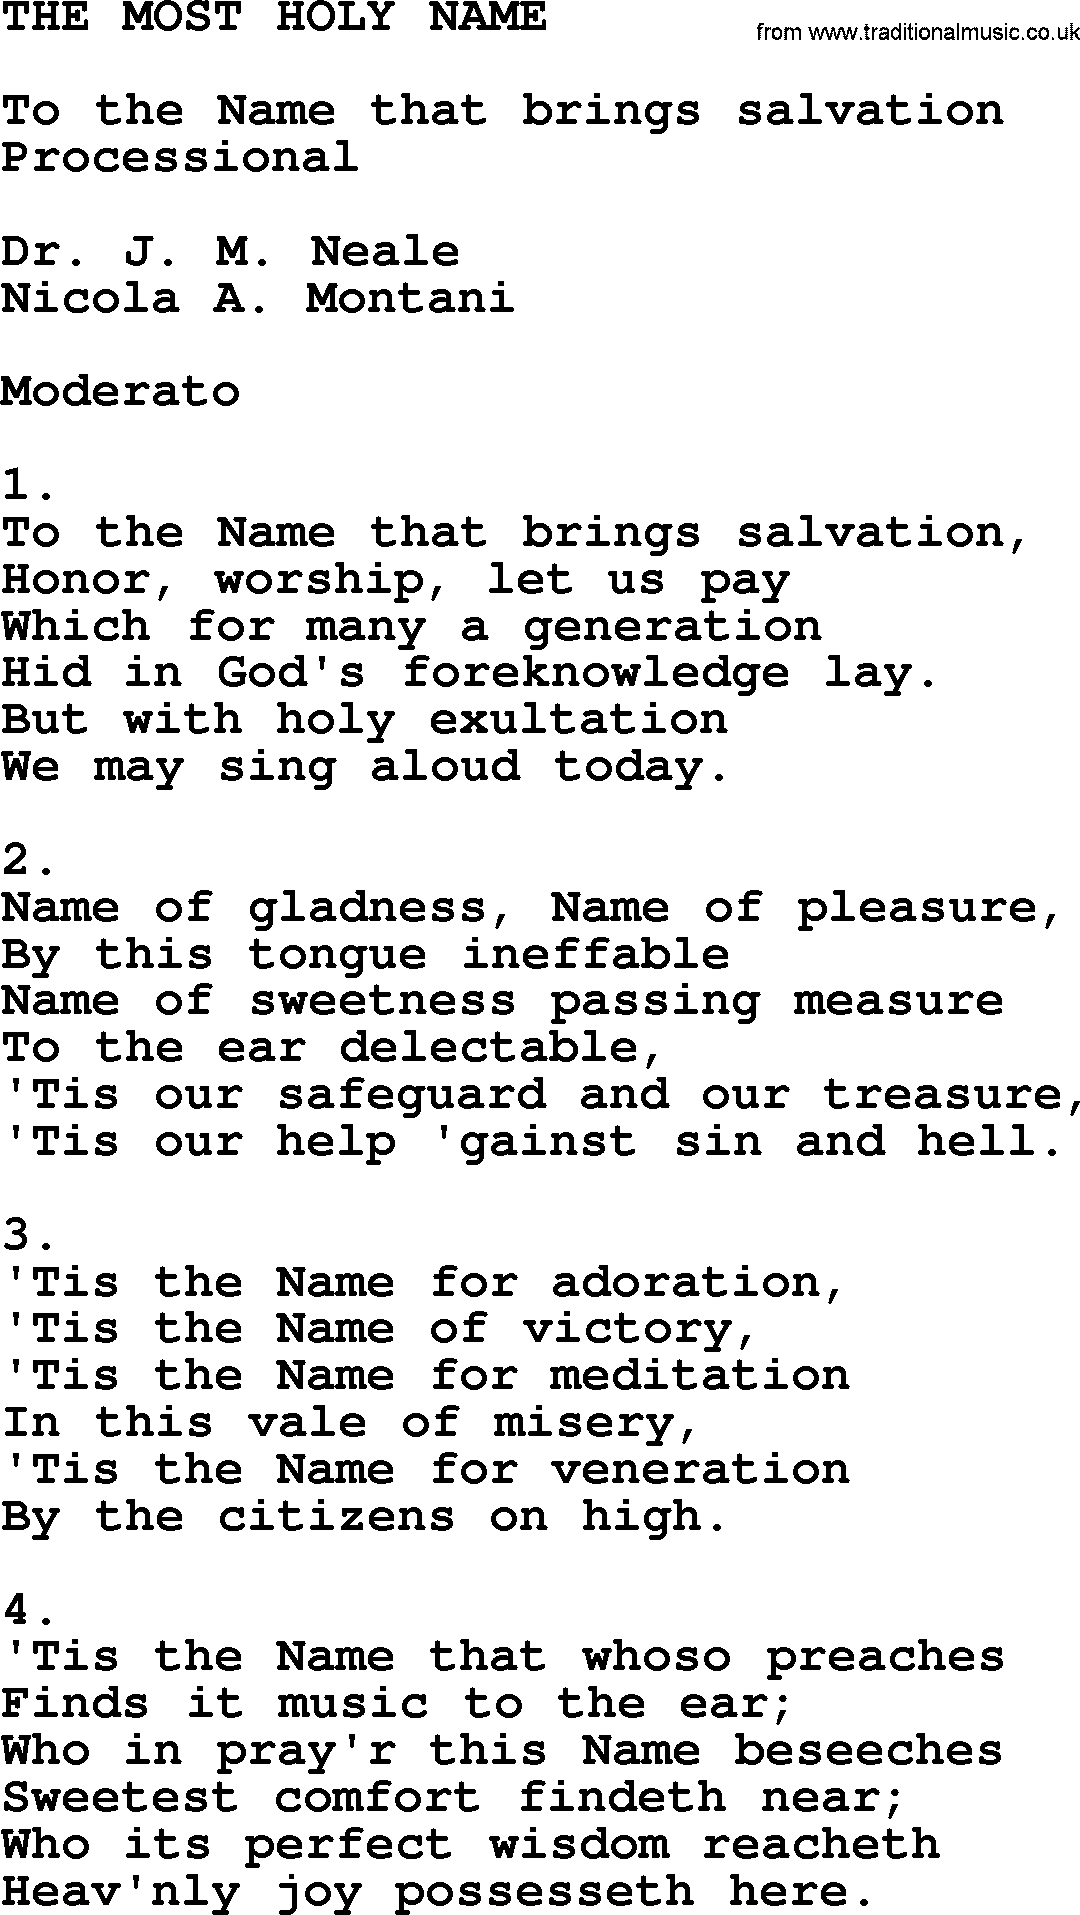 Catholic Hymn: The Most Holy Name lyrics with PDF